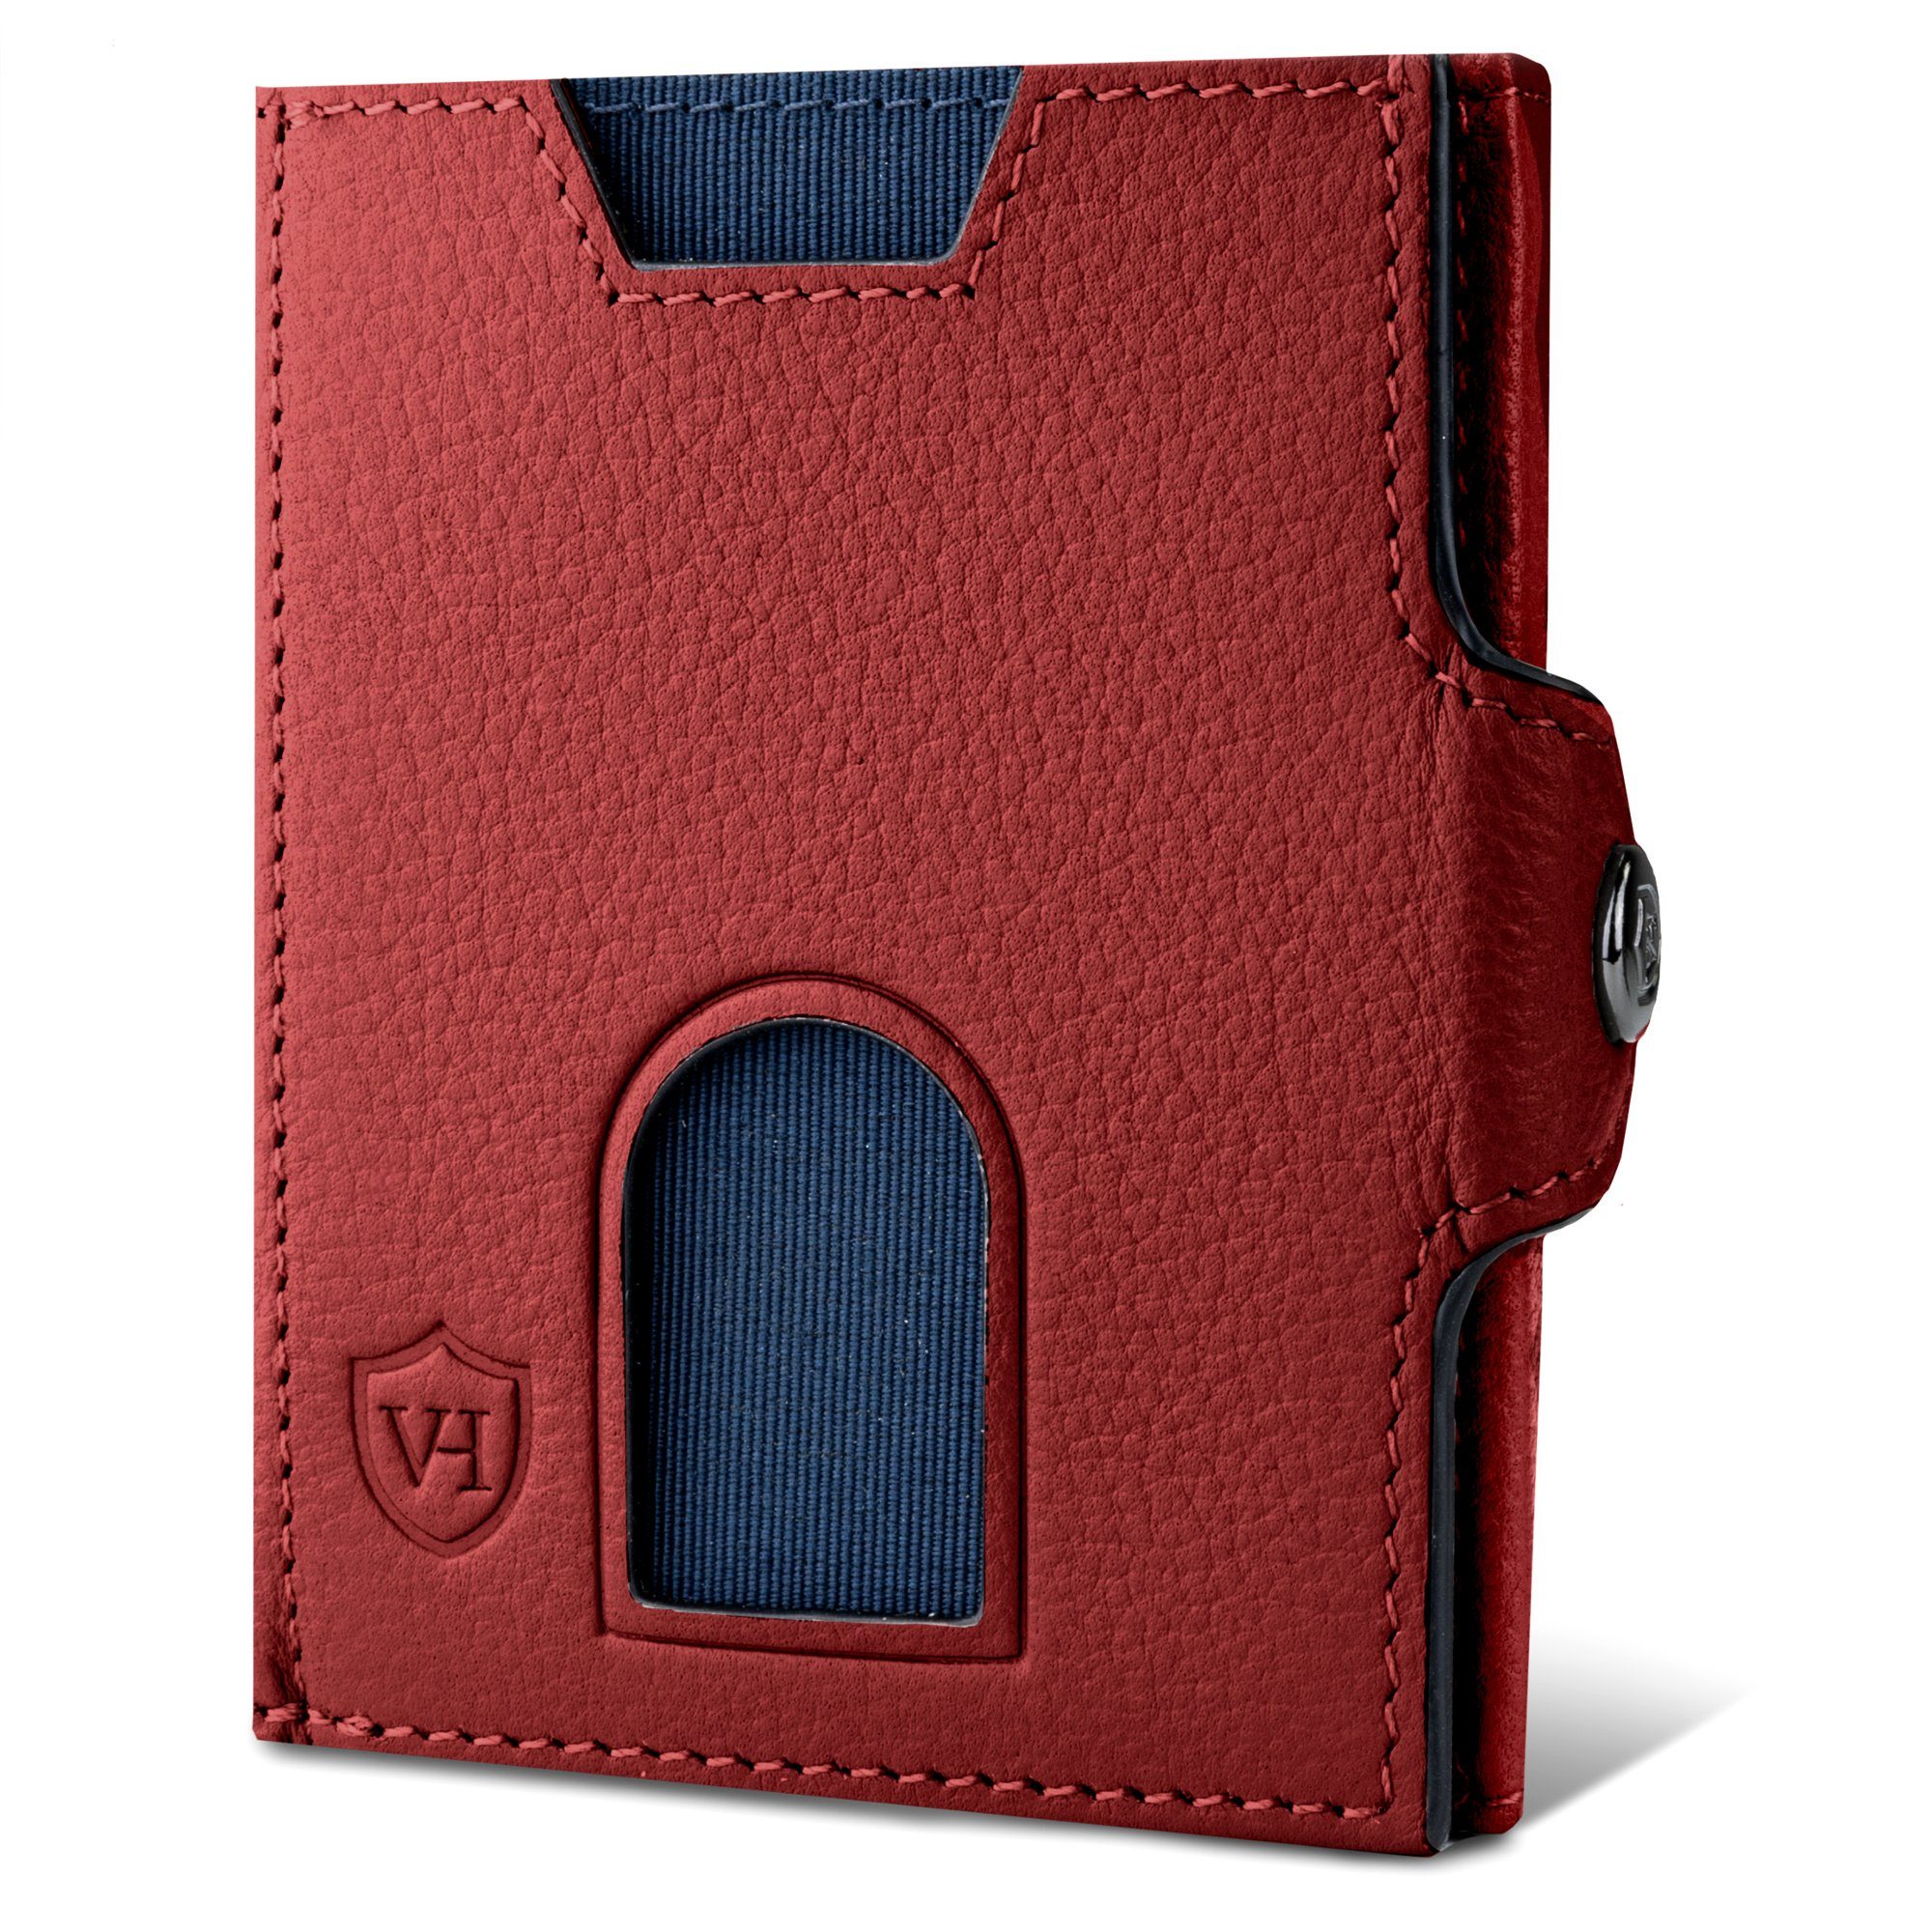 Geldbeutel Whizz VON inkl. Rot Geldbörse Geschenkbox Portemonnaie & Wallet Slim RFID-Schutz HEESEN Wallet Kartenfächer, 6 mit